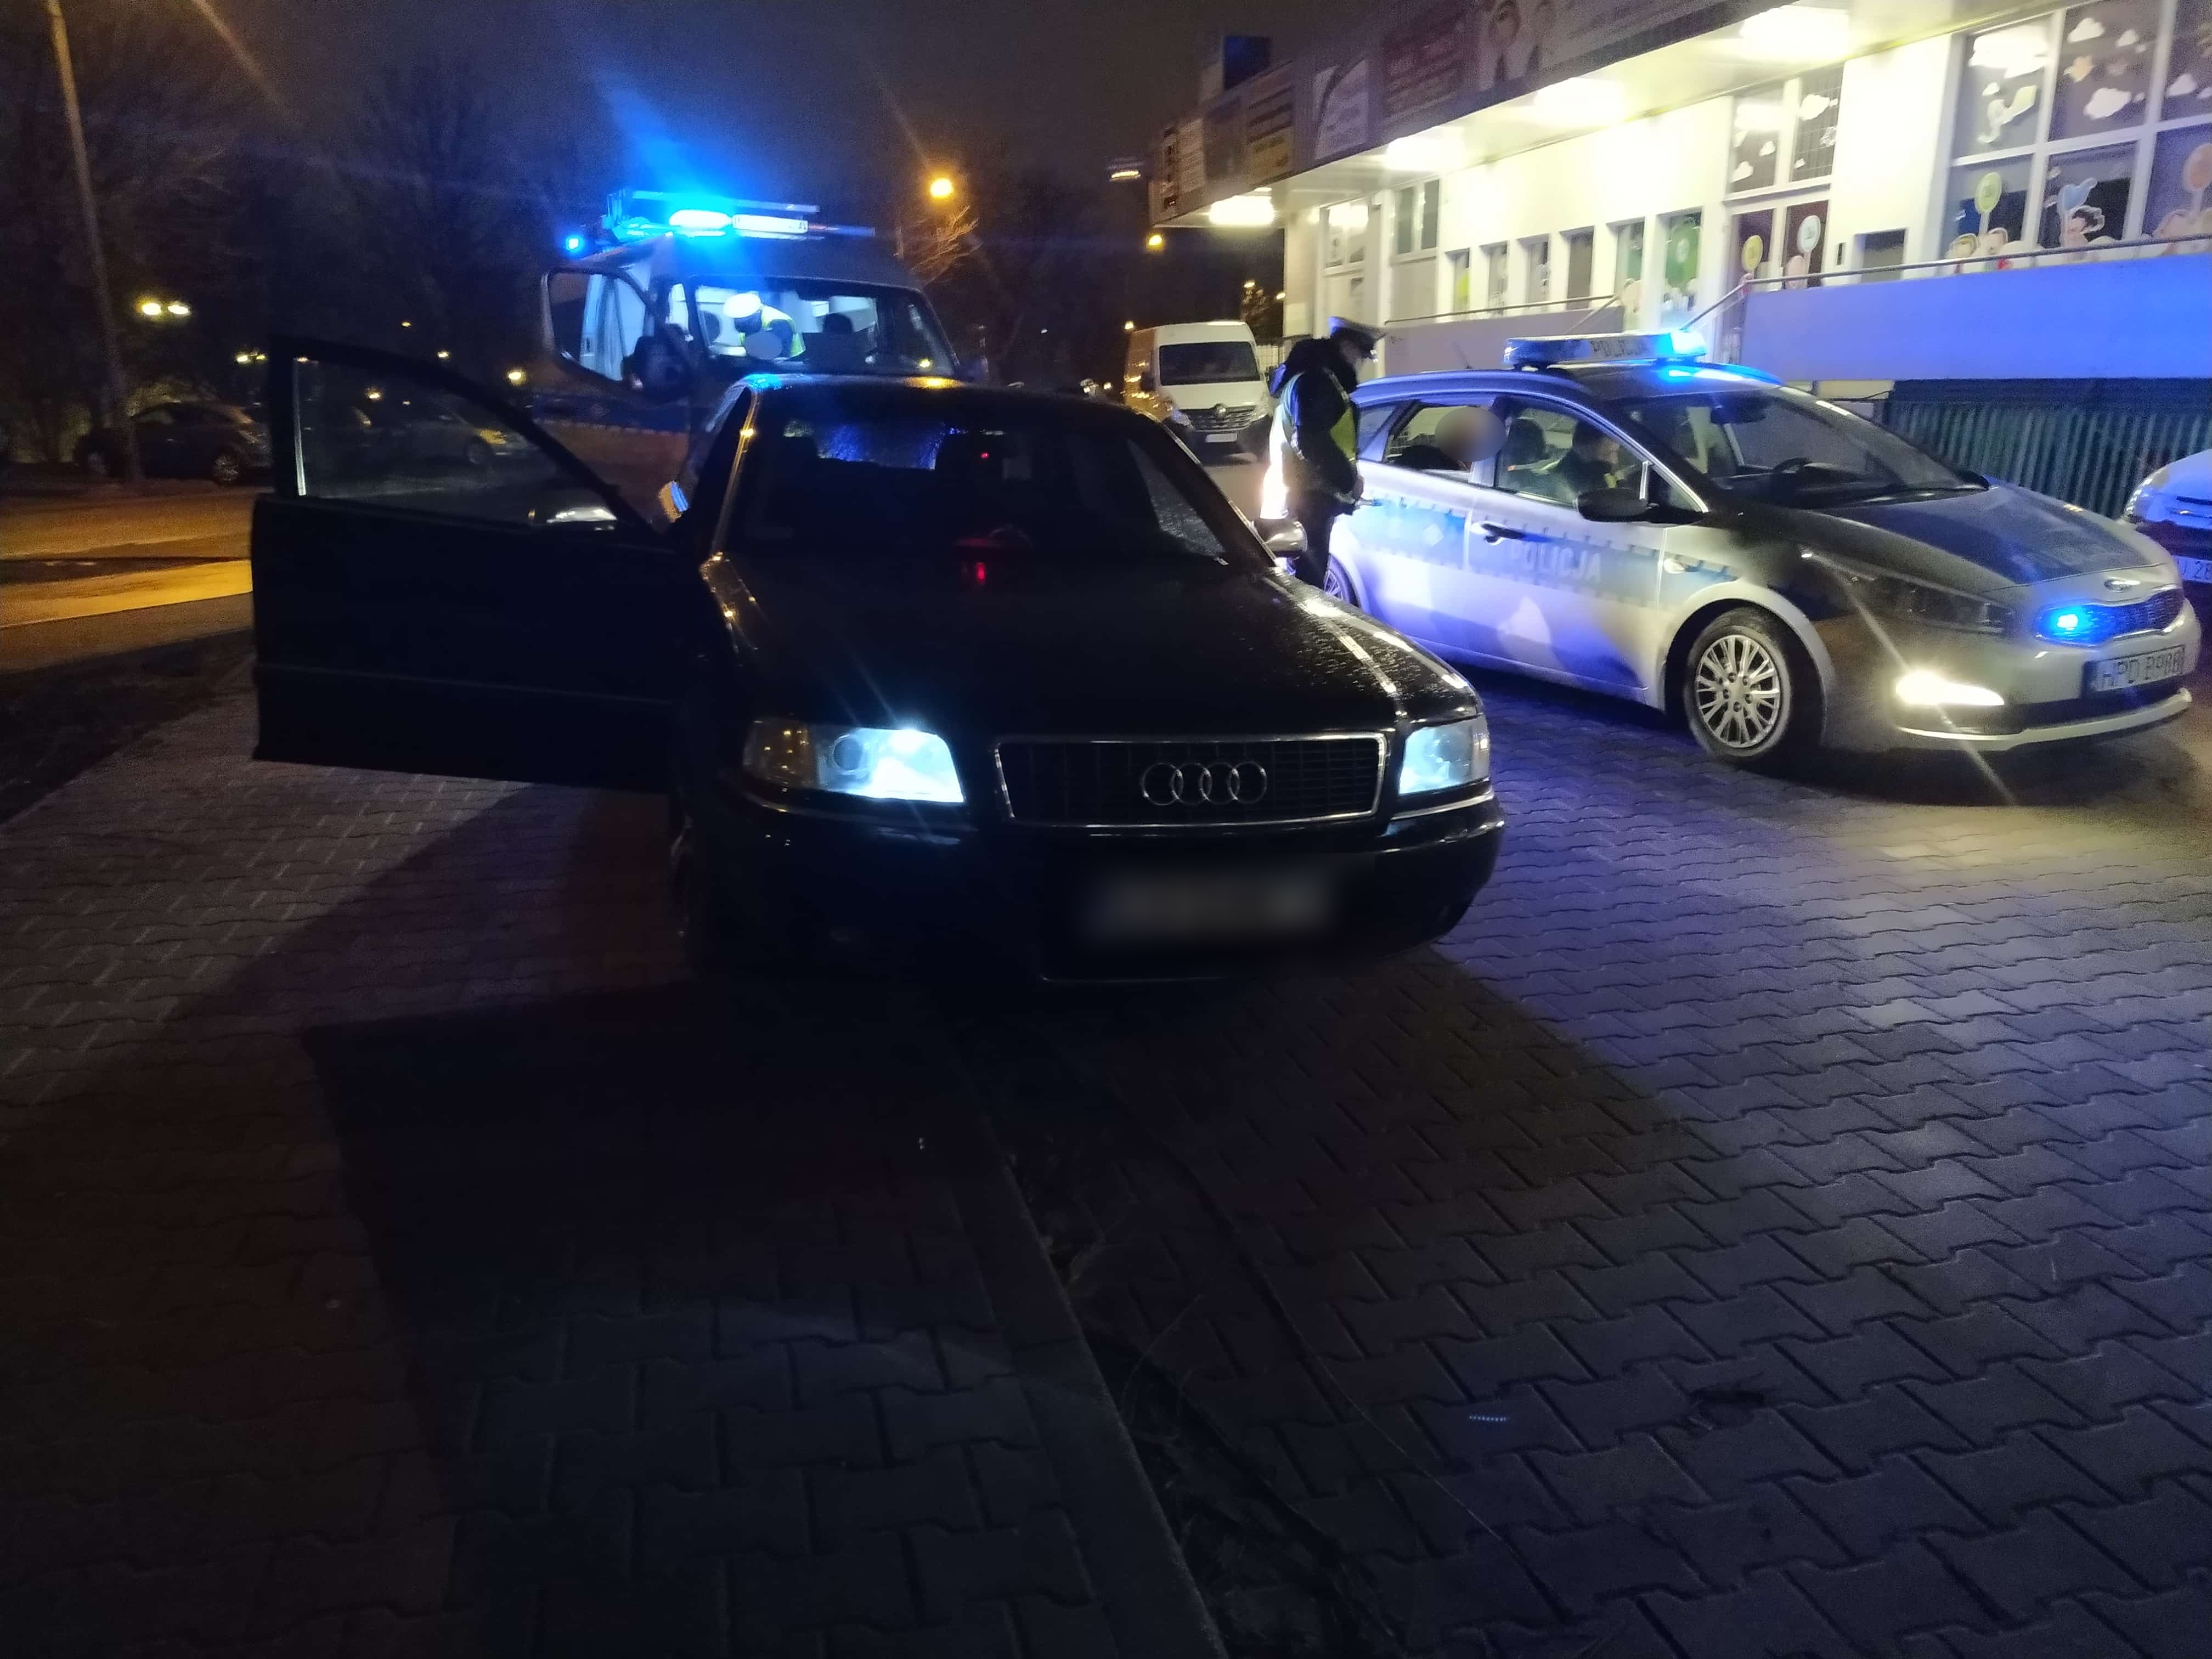 Audi toczyło się od prawej do lewej, kierowca był upojony alkoholem. Policjanci ruszyli w pościg (zdjęcia)